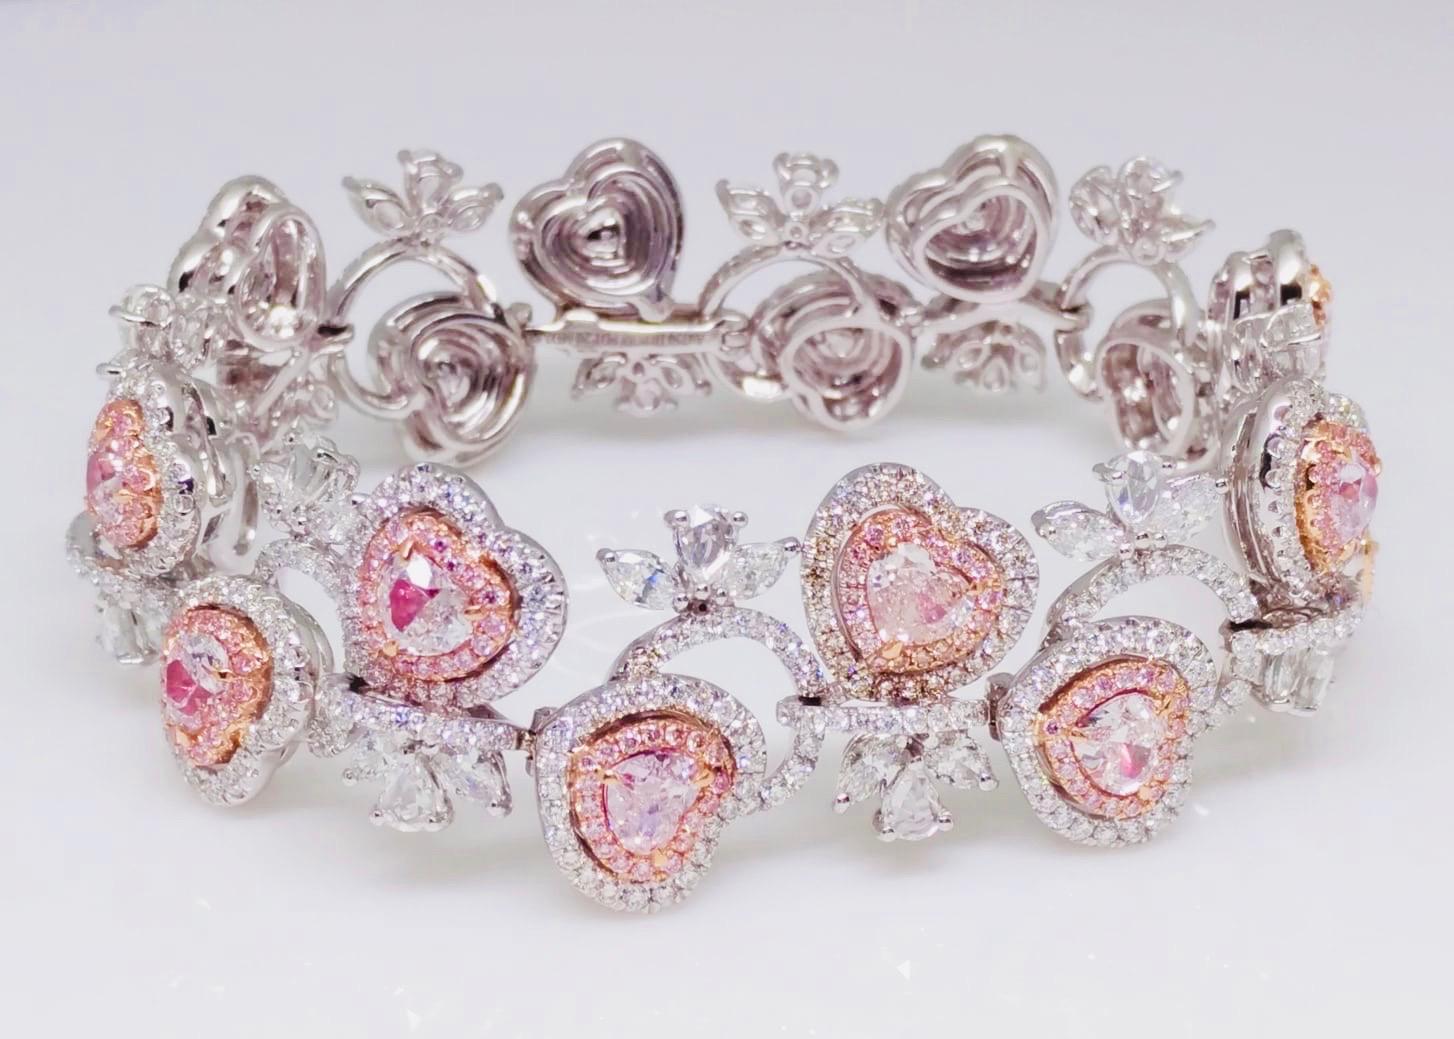 Aus dem Emilio Jewelry Vault, präsentiert ein wunderschönes rosa Diamantarmband mit natürlichen, herzförmigen rosa Diamanten. Bitte fragen Sie uns nach weiteren Informationen. 
Natürliche blaue, rosafarbene und grüne Diamanten sind äußerst selten,